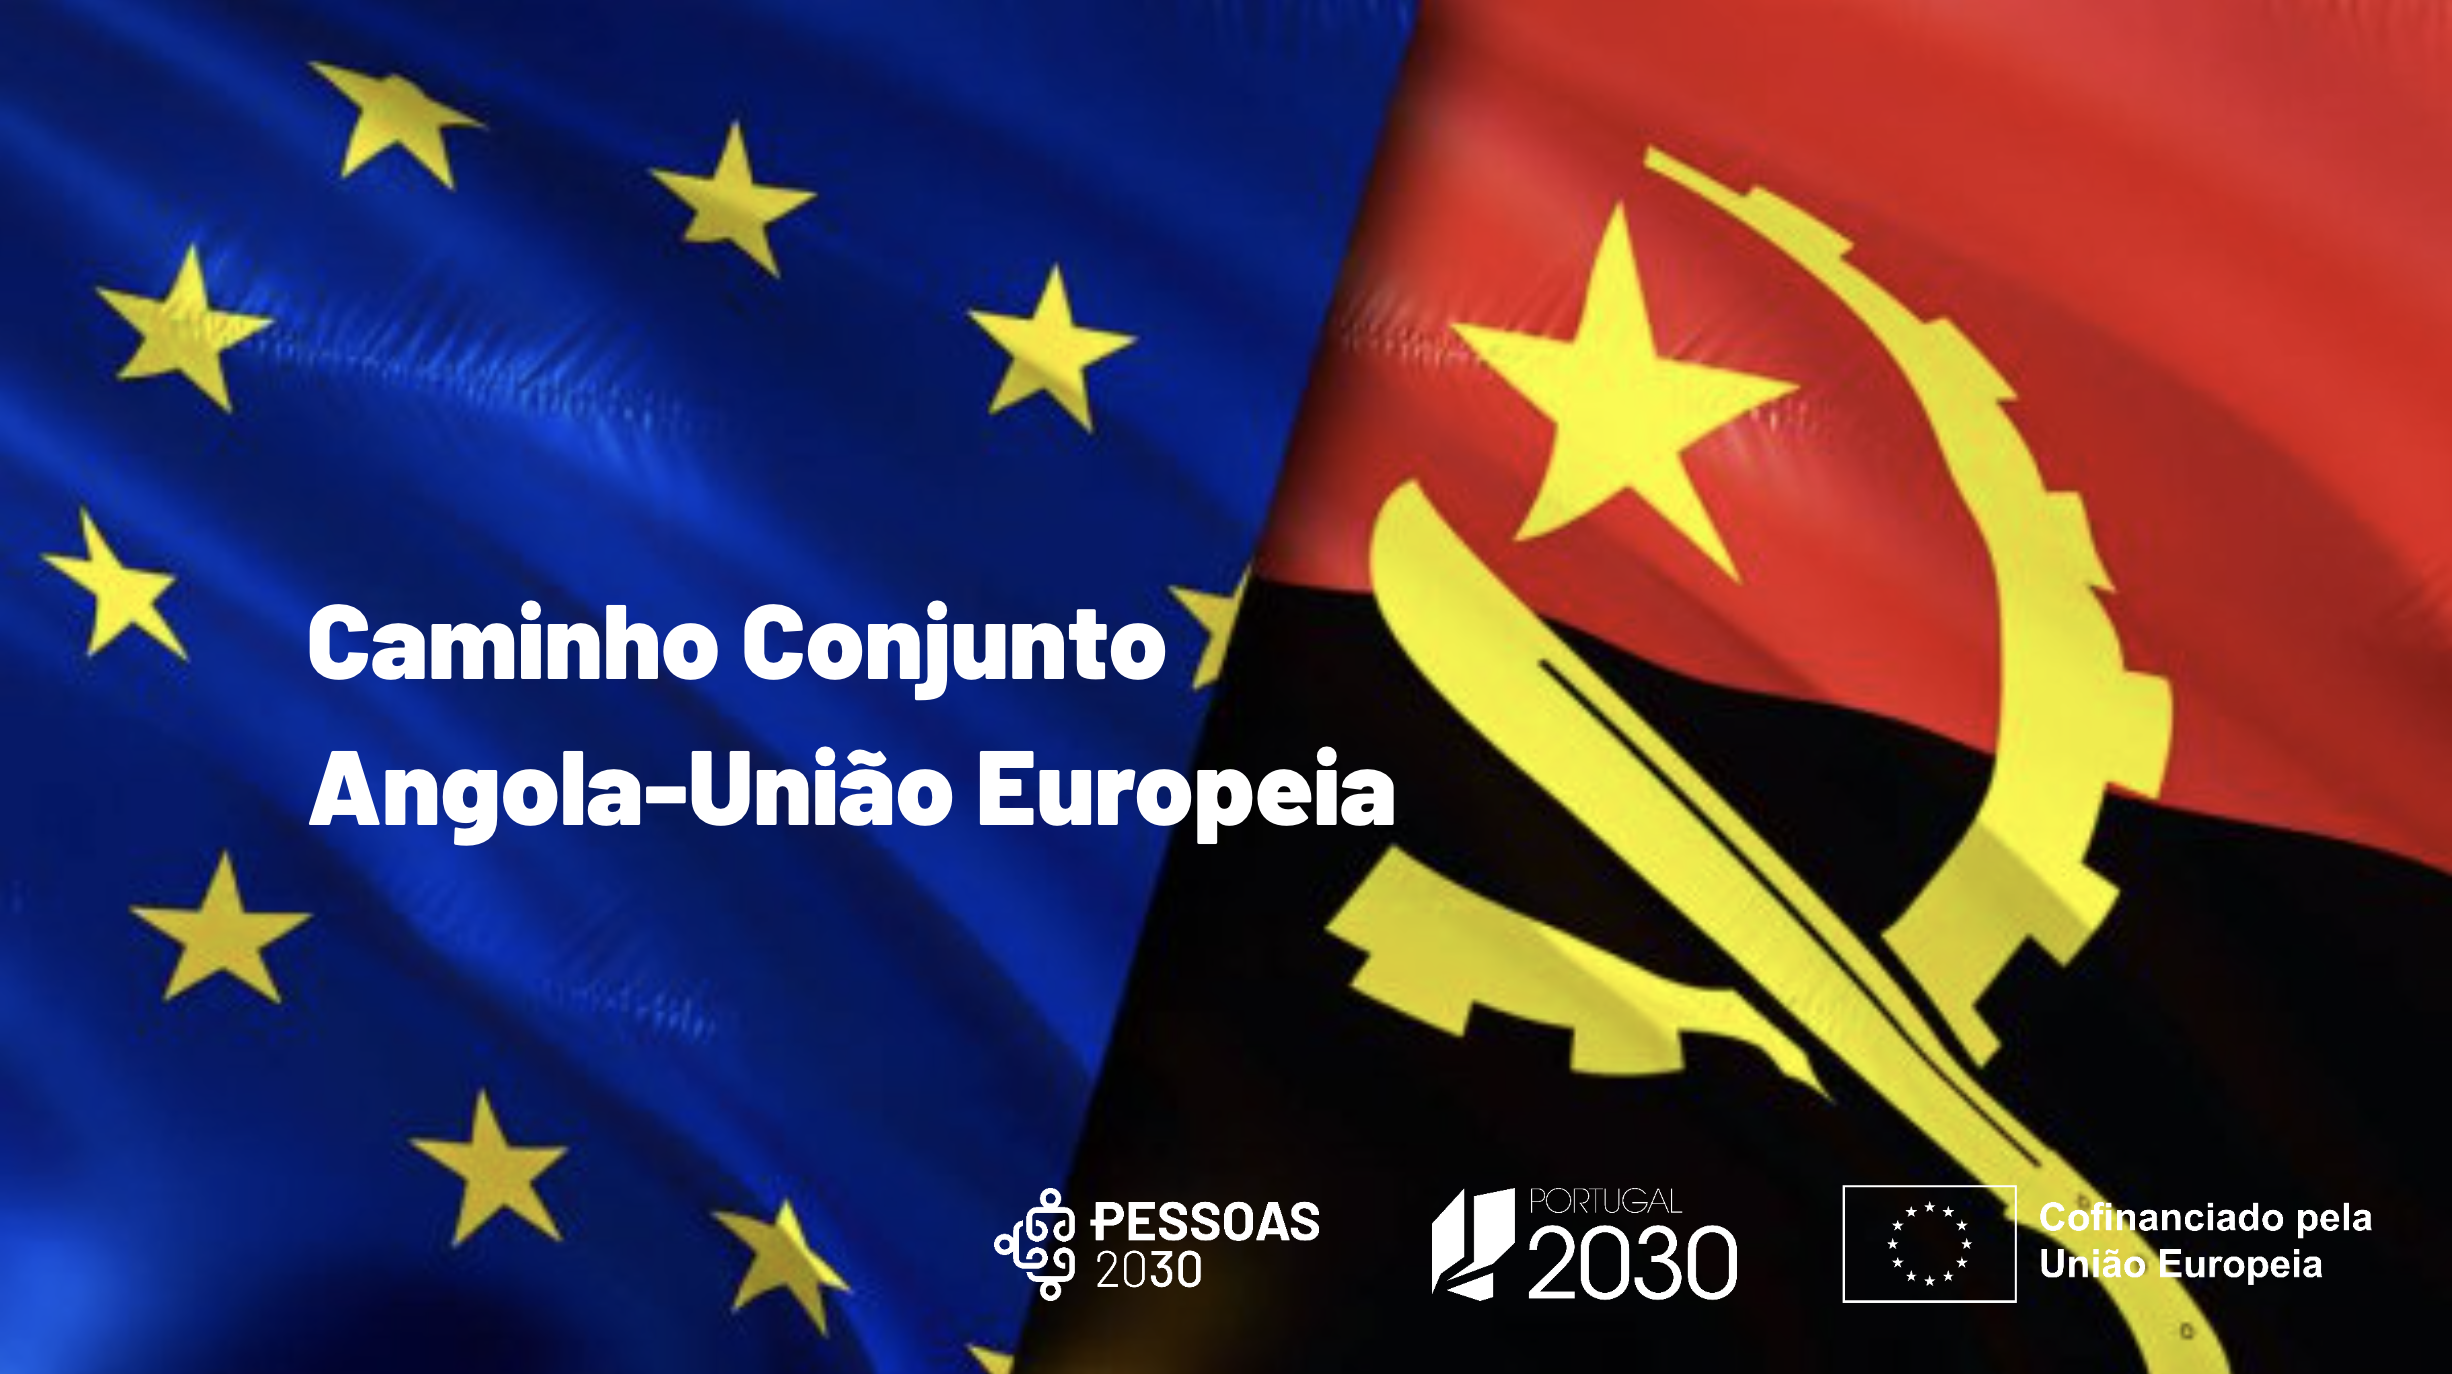 PESSOAS 2030 participa em sessão de trabalho com delegação angolana no âmbito do acordo cooperação Caminho Conjunto Angola-União Europeia